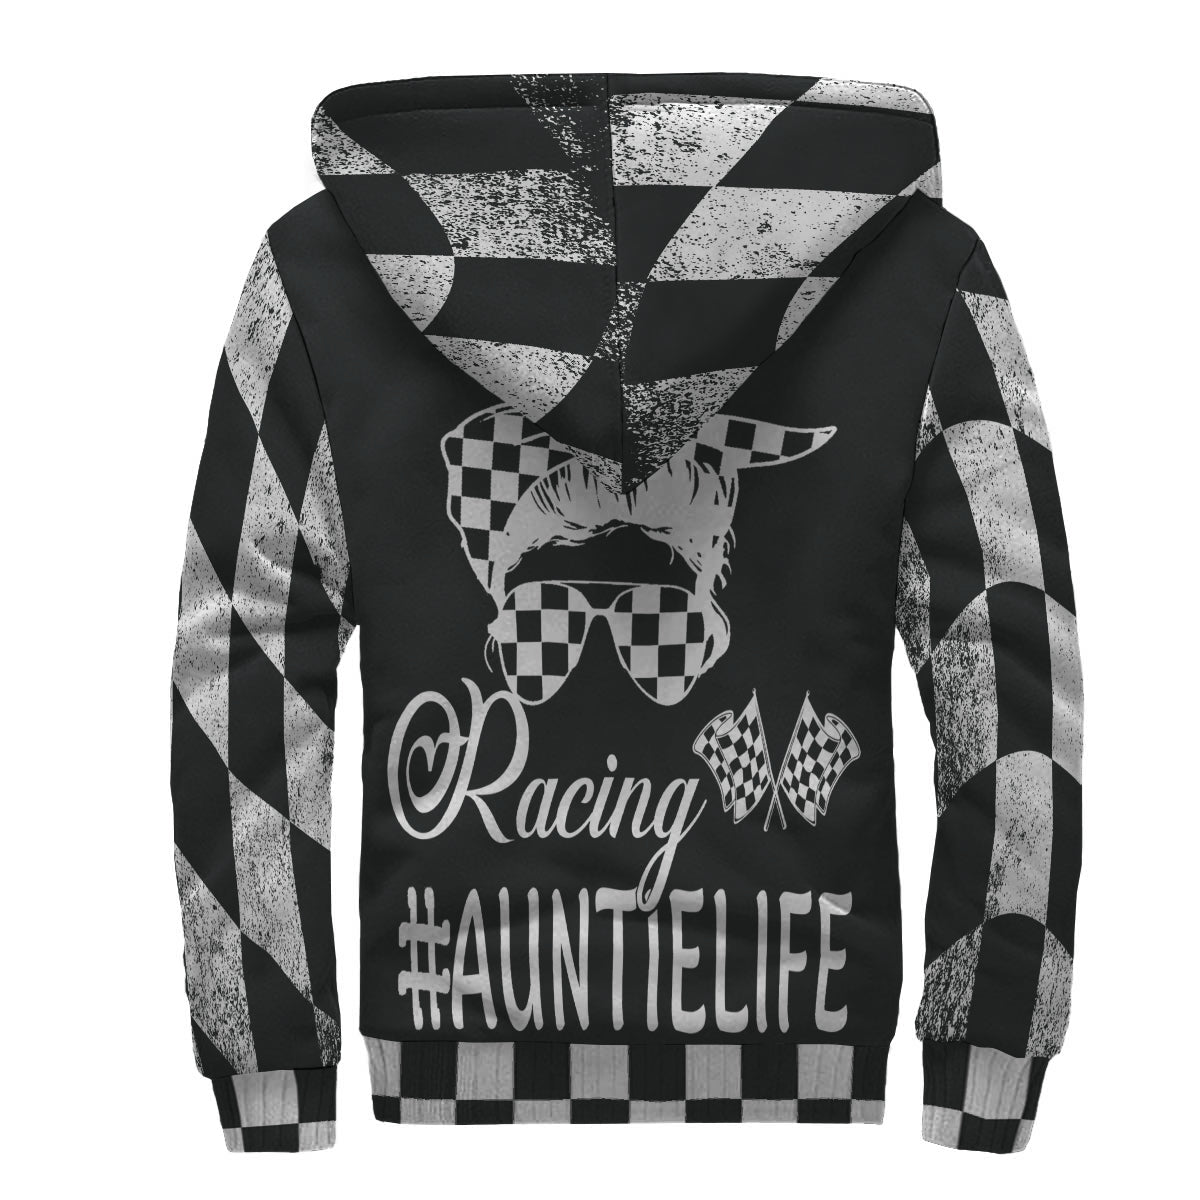 Racing aunt jacket